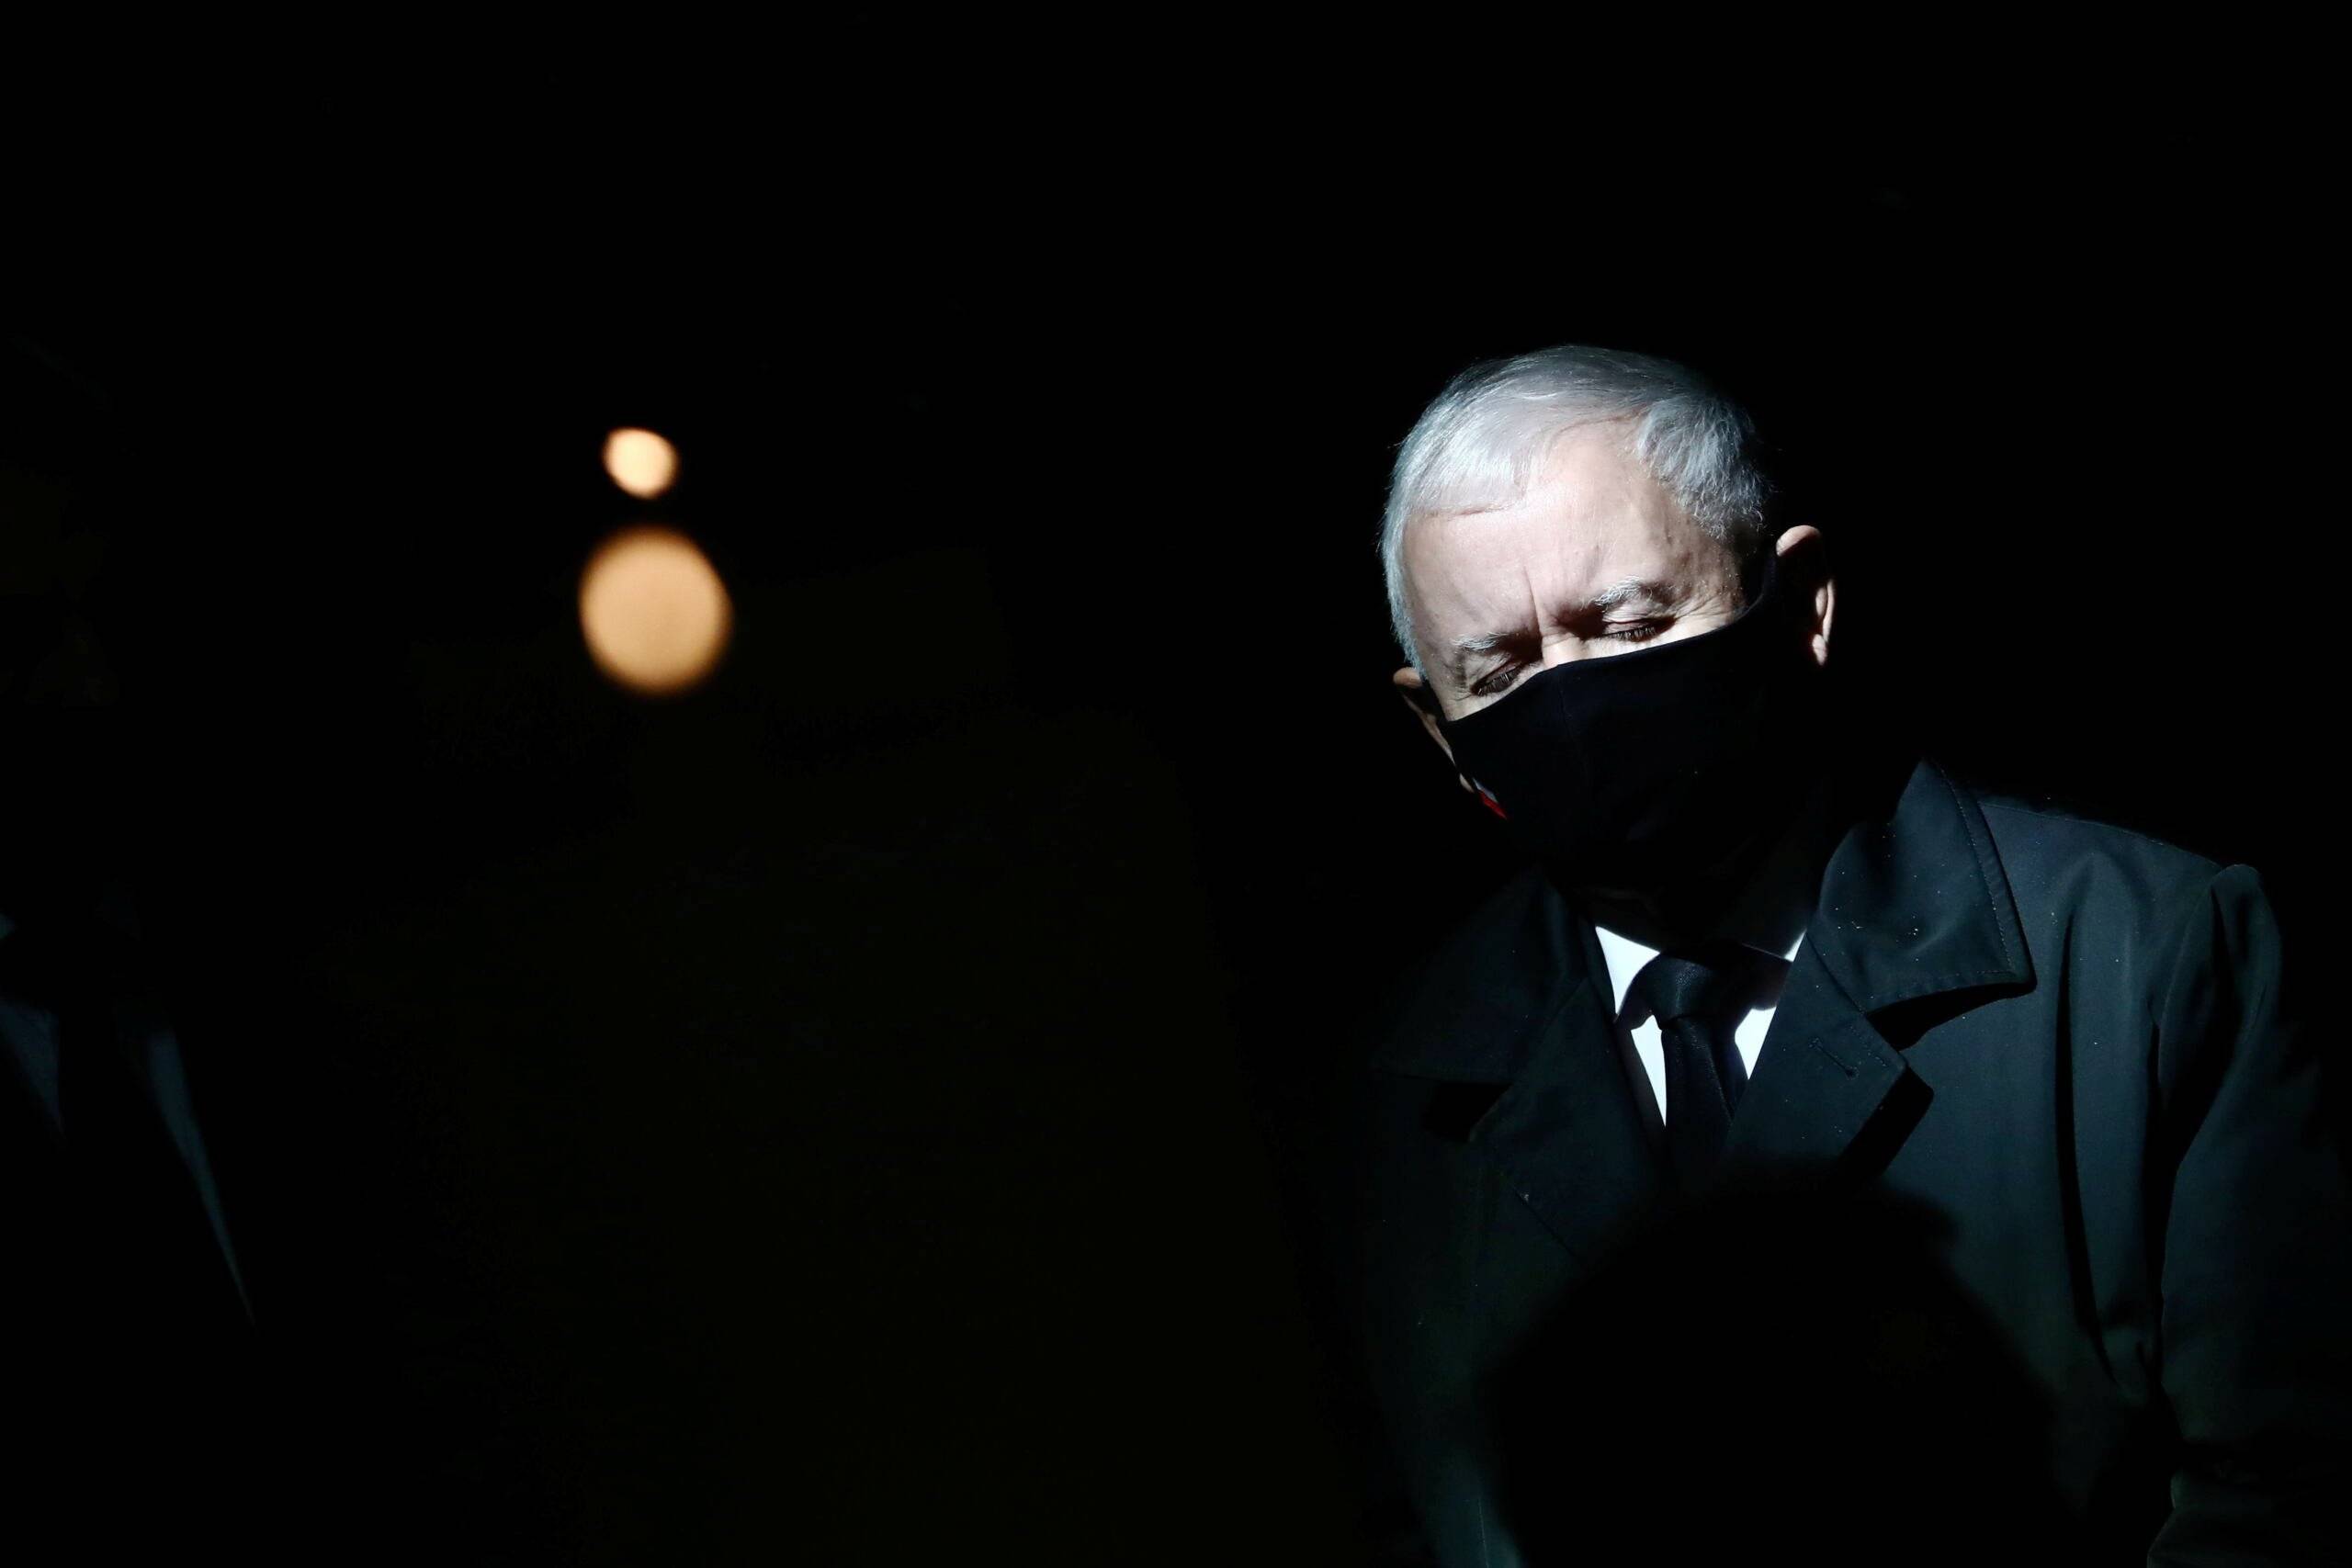 Jarosław Kaczyńsi w czarnej maseczce, stoi z zamkniętymi oczami, wokół ciemność